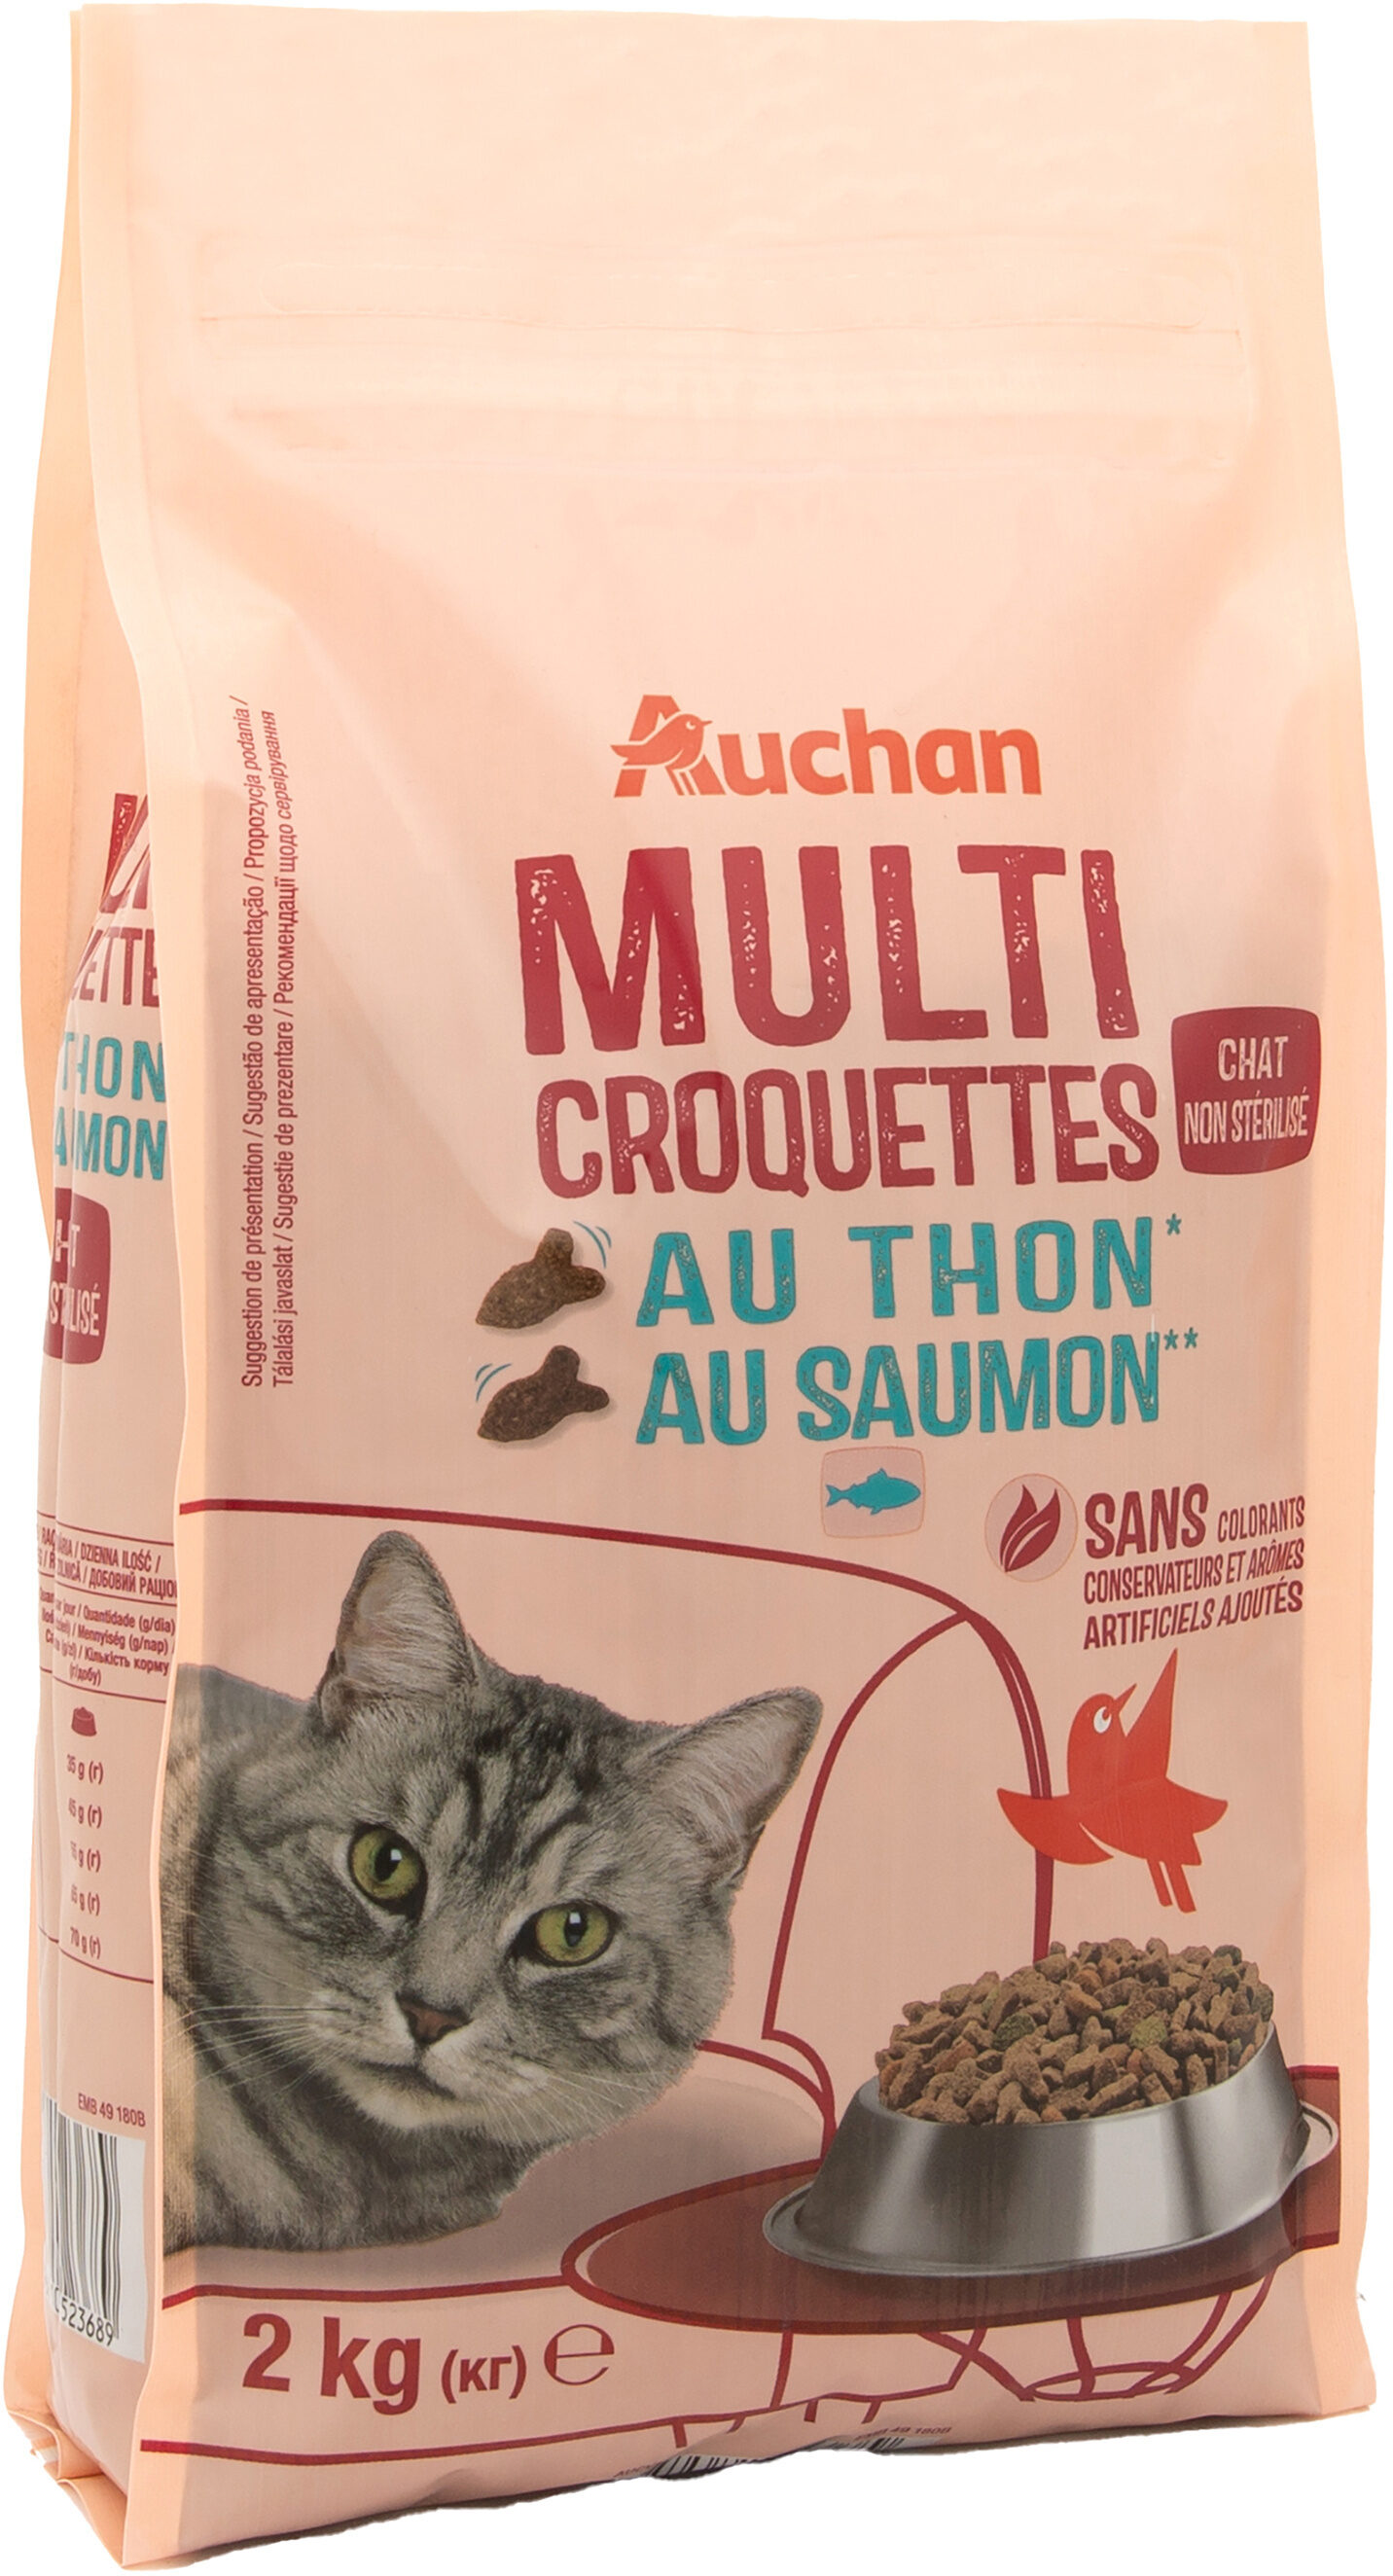 Multicroquettes au thon* au saumon** - Chat non stérilisé - Produit - fr